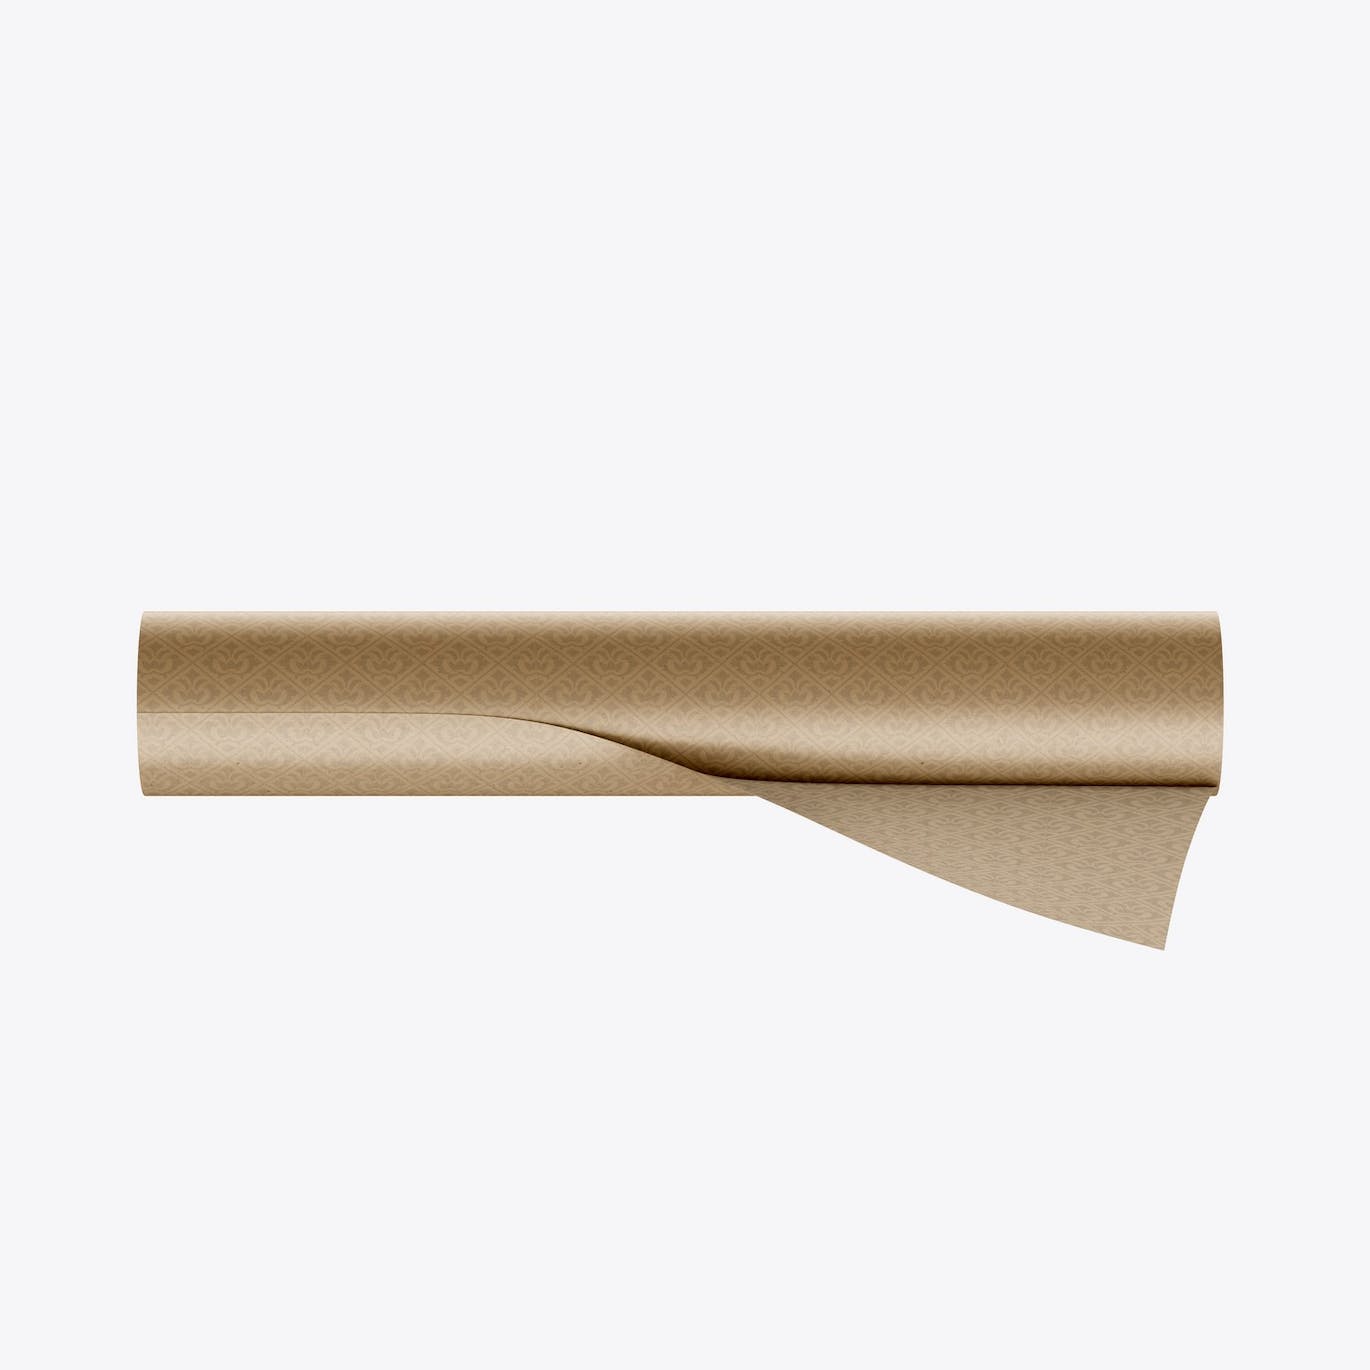 纸卷图案Logo设计样机 Paper Roll Mockup 样机素材 第14张